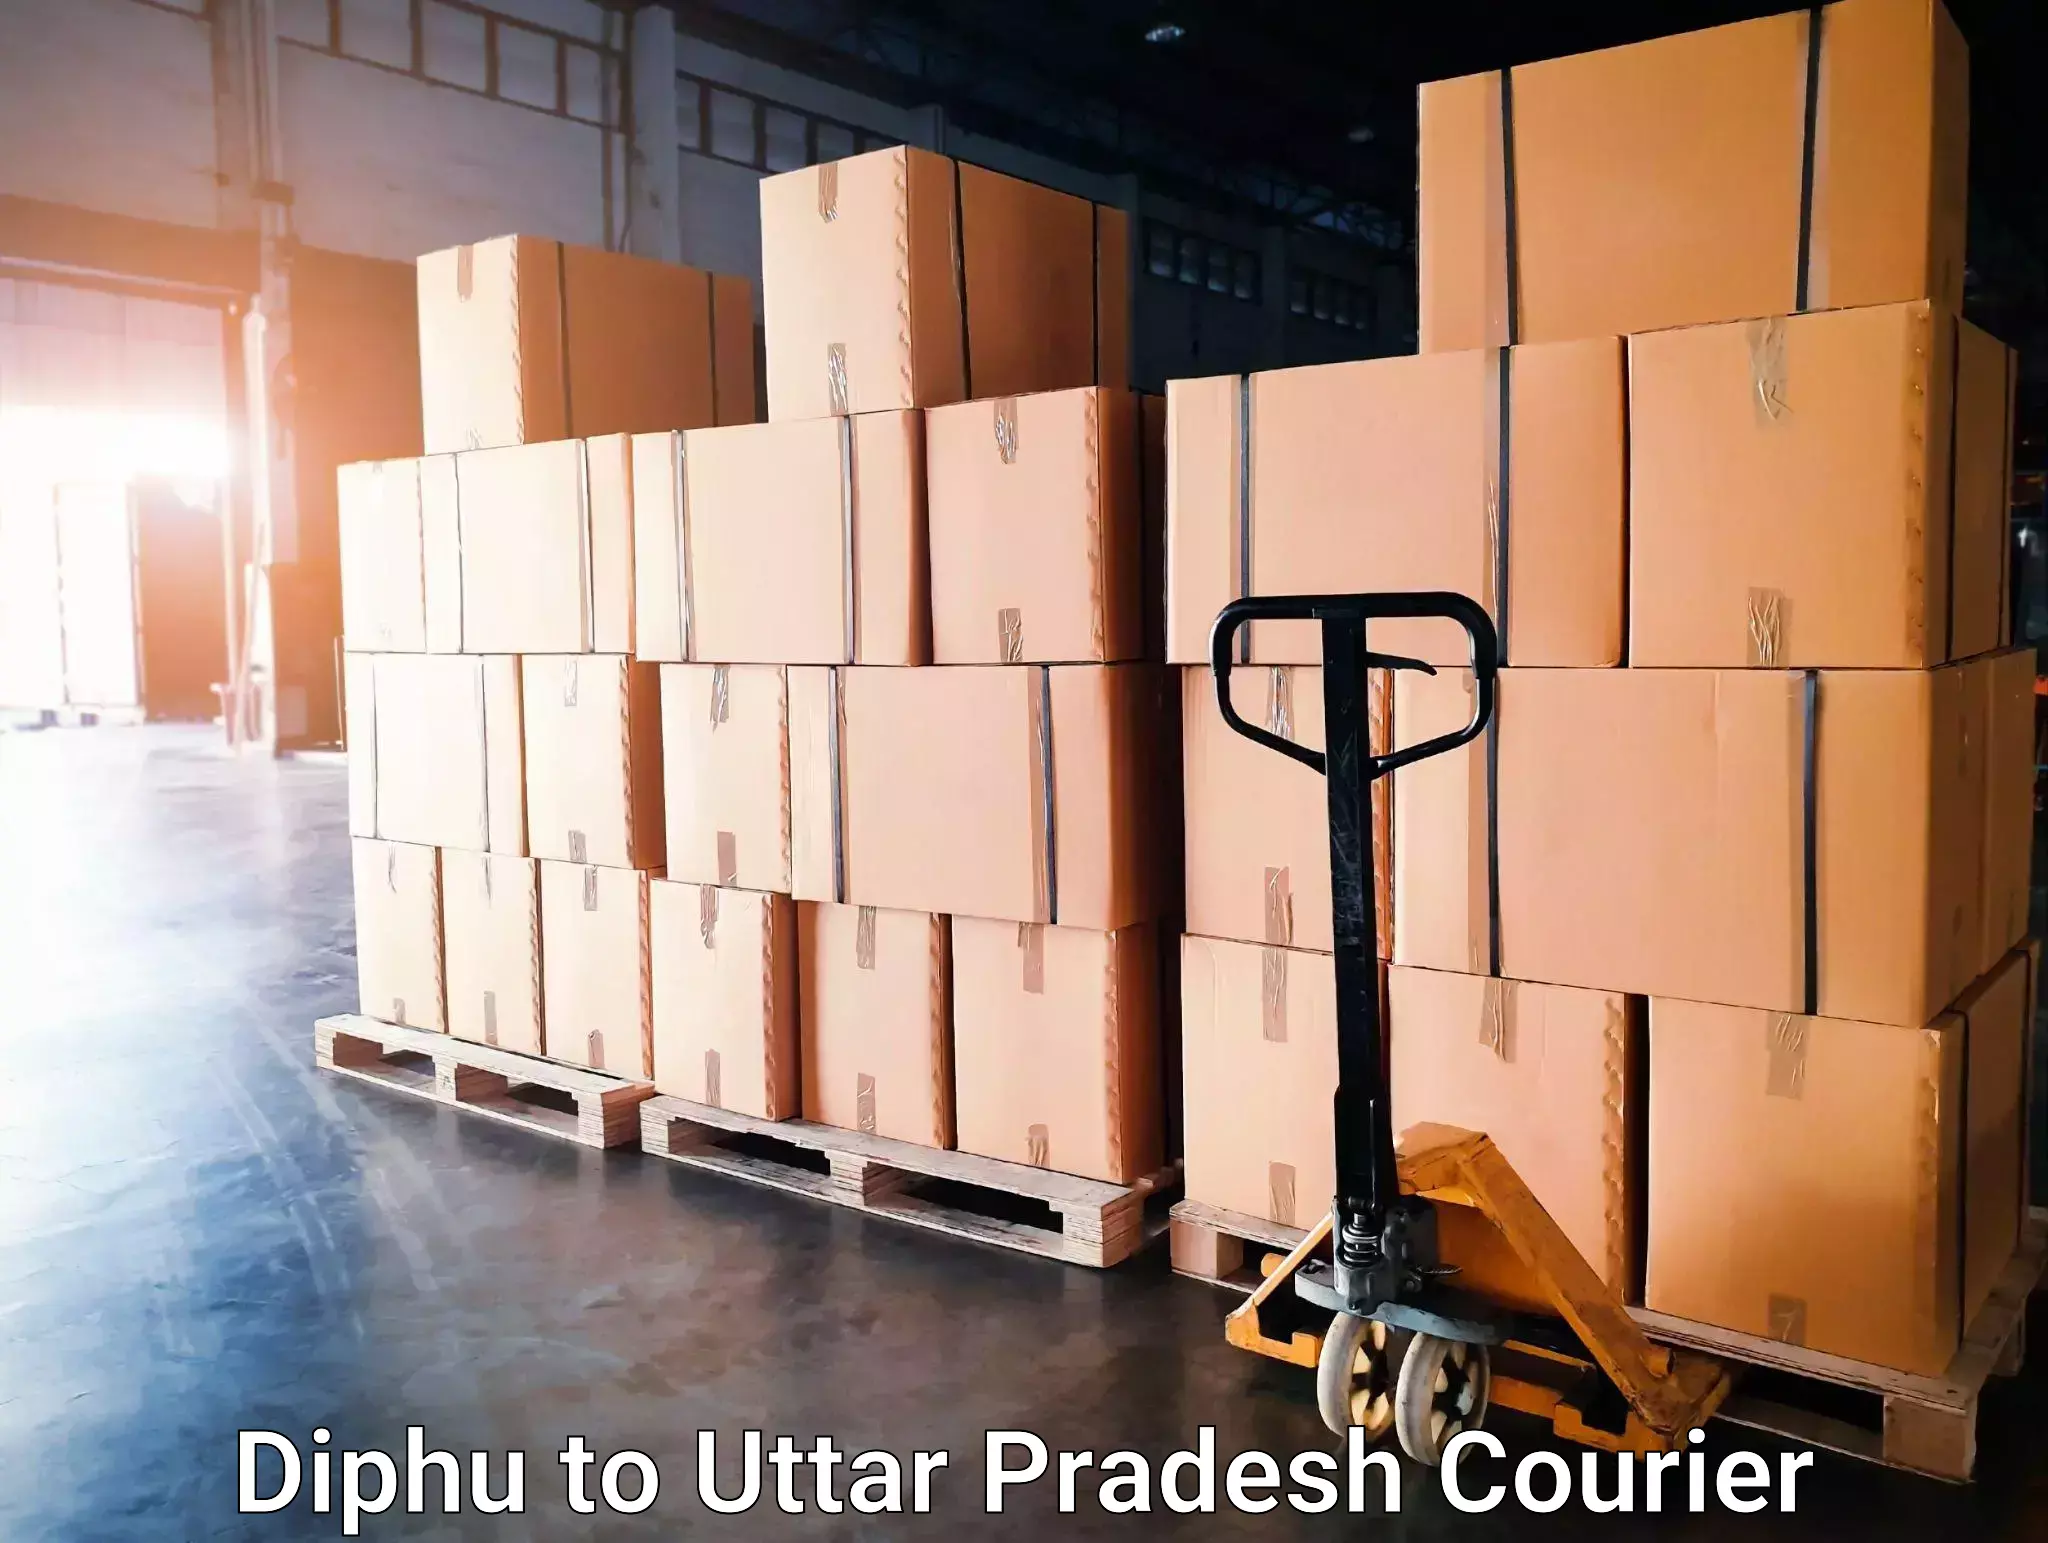 Fast delivery service Diphu to Baksha